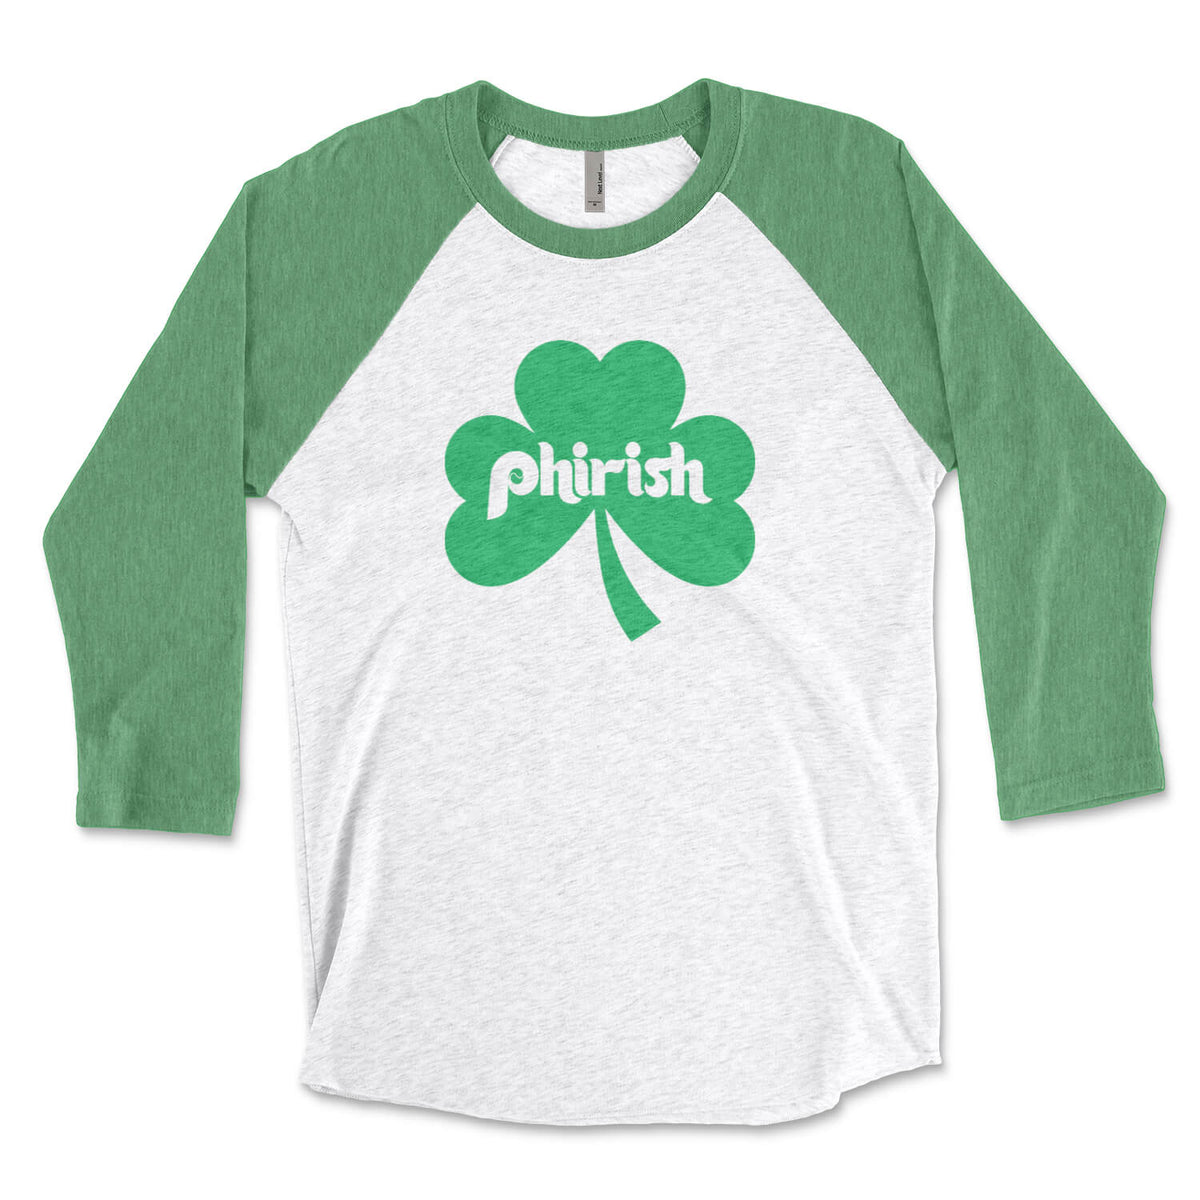 Philadelphia Irish Phirish shamrock St. Paddy&#39;s Day green and white raglan tee shirt from Phillygoat